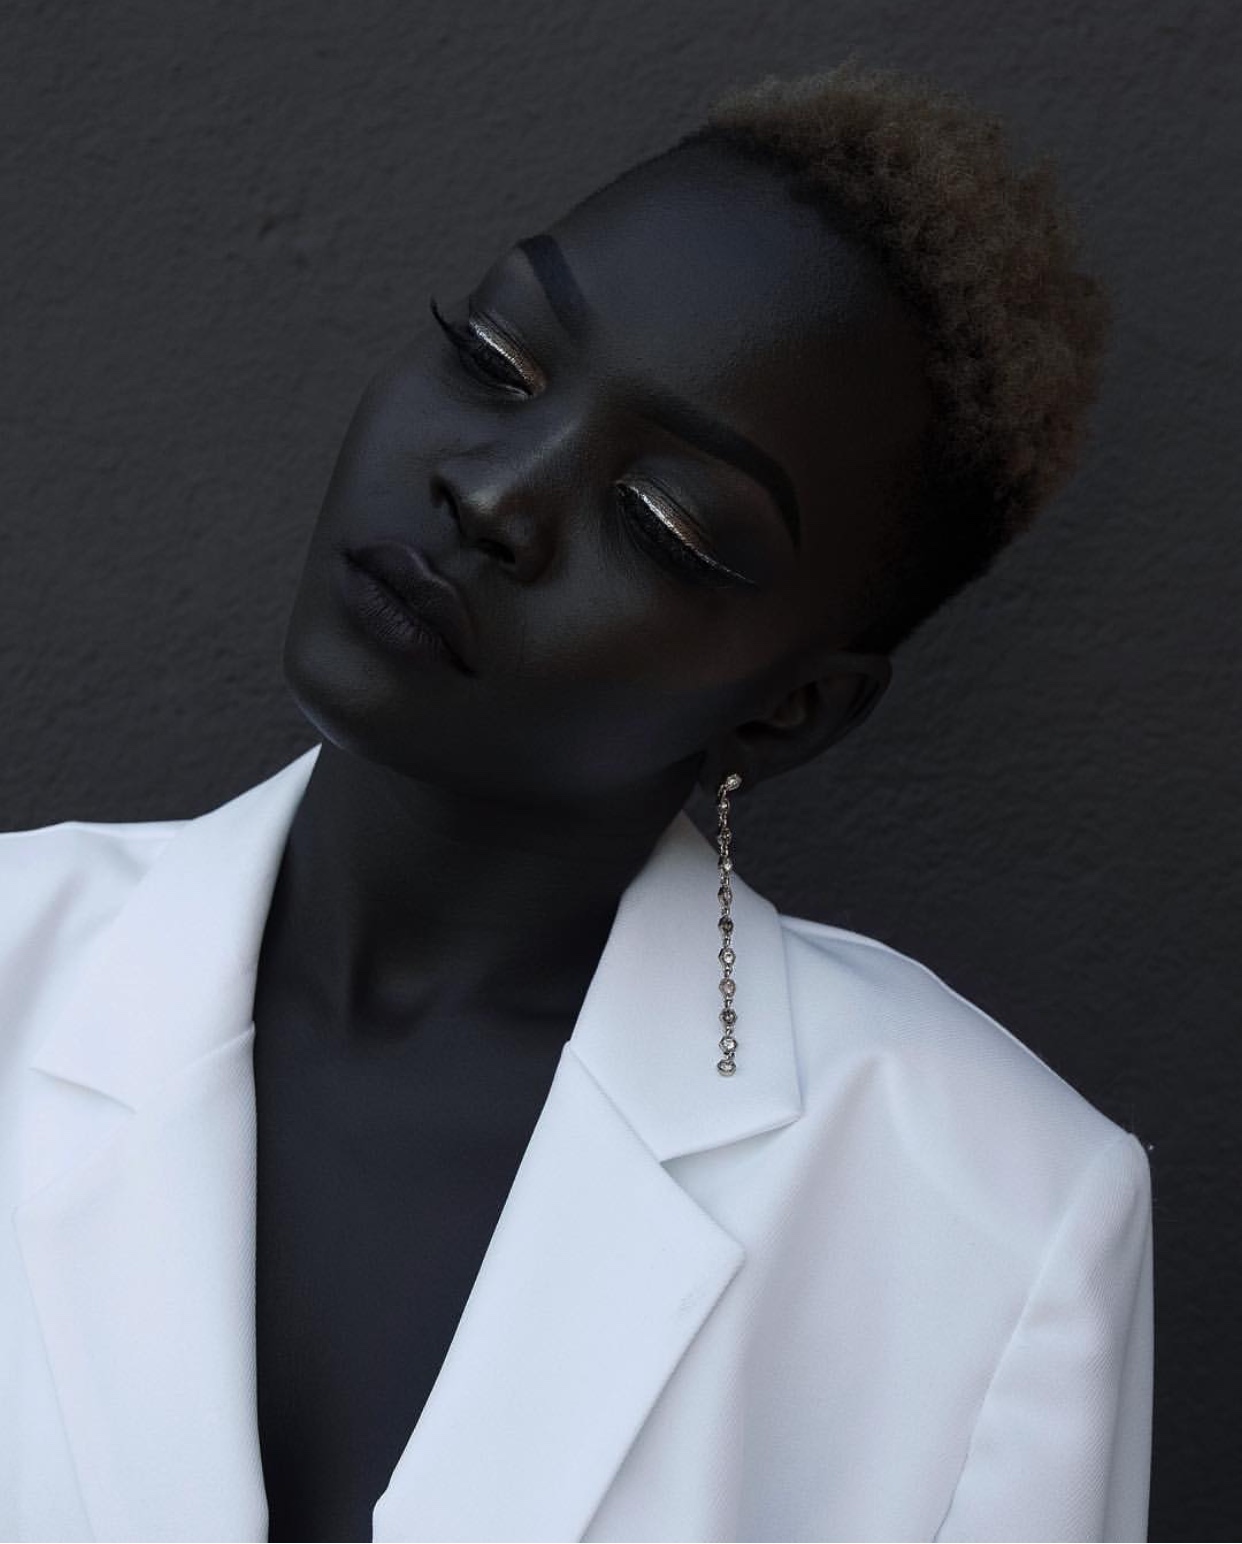 Белая черная негритянка. Ньяким Гатвеч. Модель Ньяким Гатвех. Худия Диоп. Королева тьмы - Ньяким Гатвех - модель из Южного Судана.